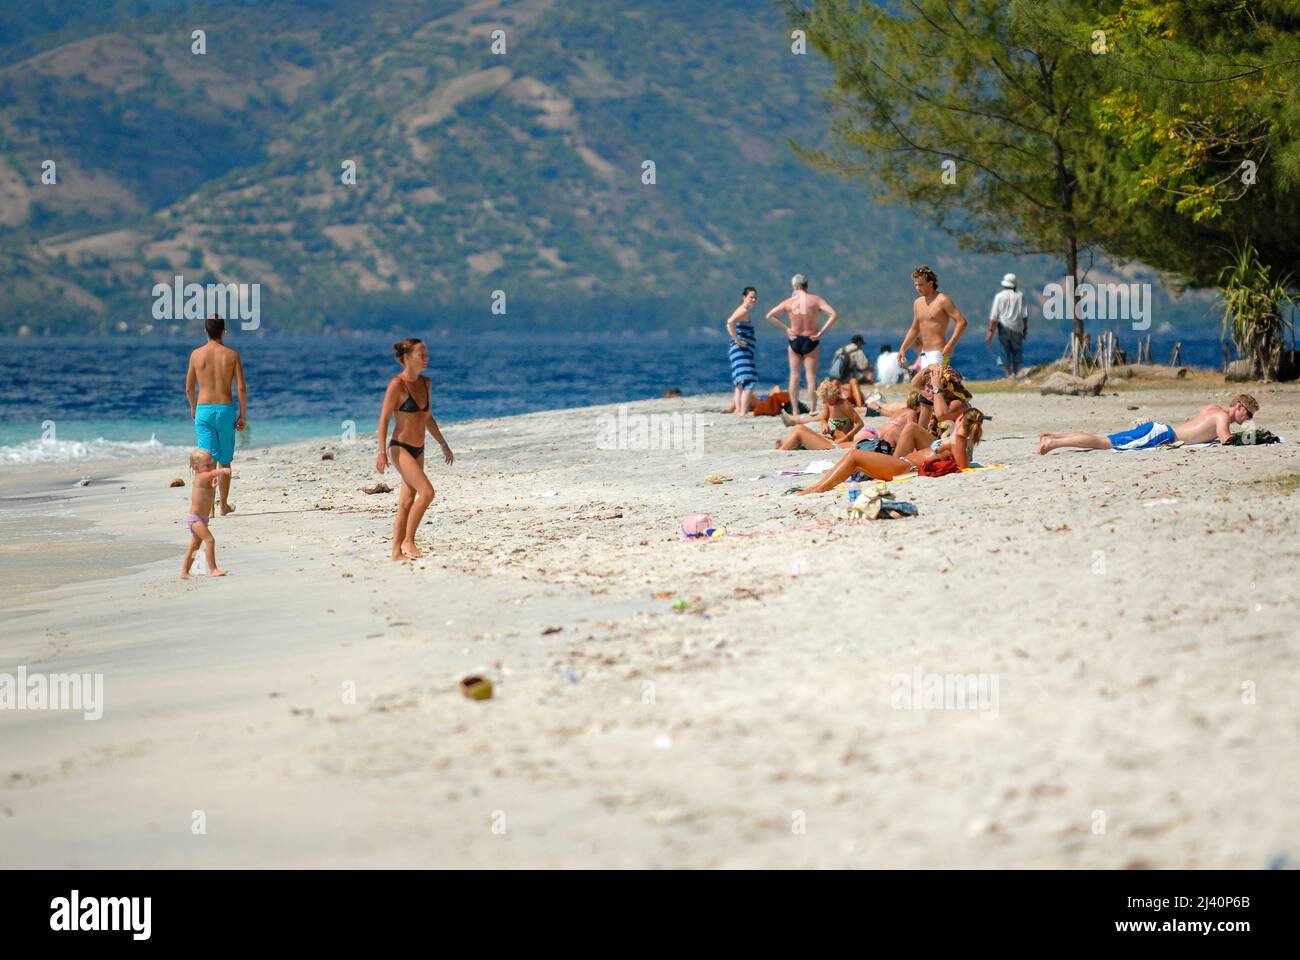 Tourists swim and relax on one of Gili Trawangan's beaches. Stock Photo